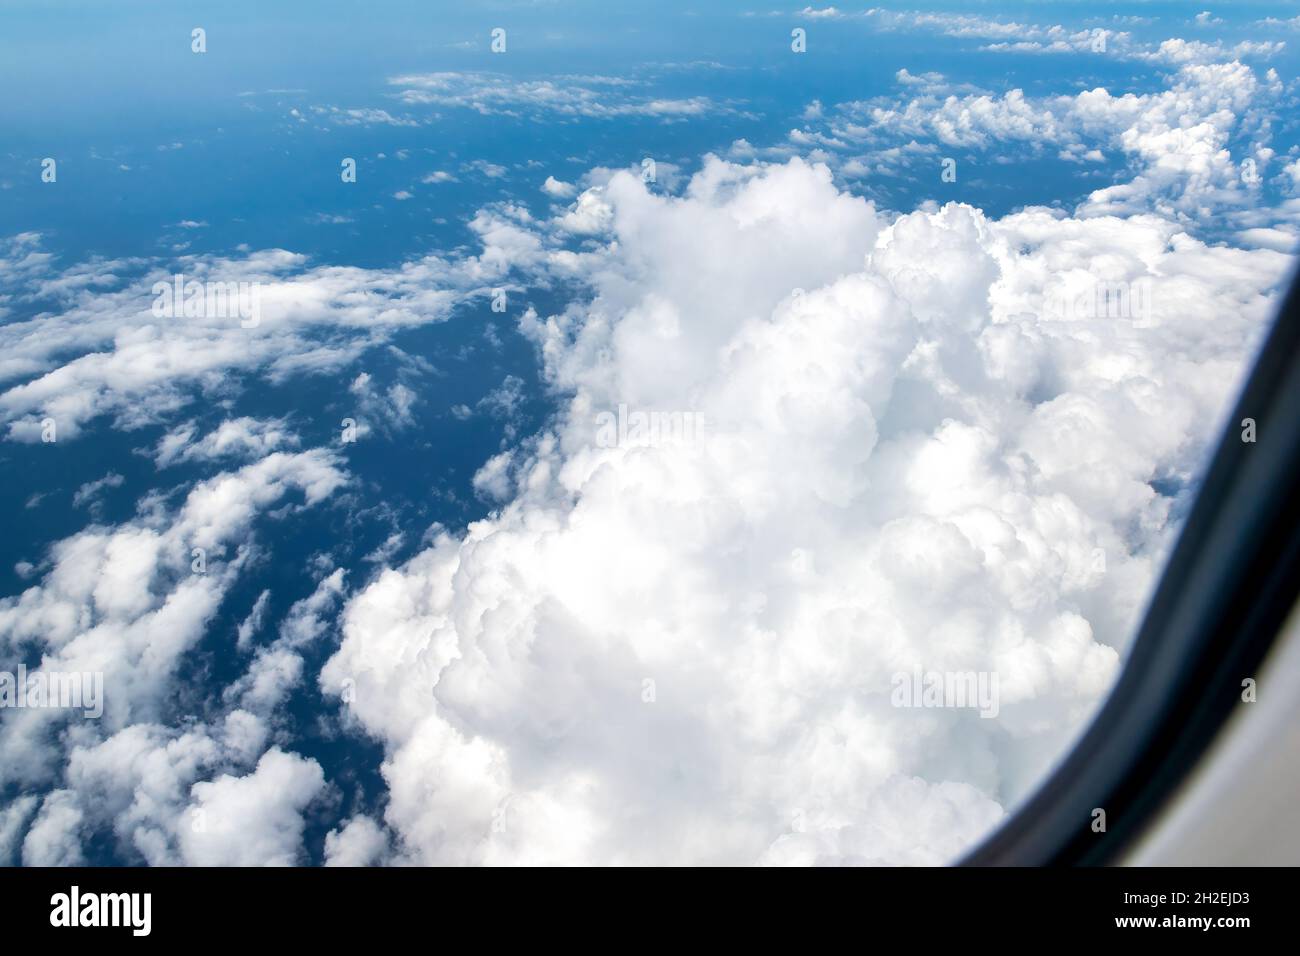 Simplicité et beauté des nuages dans un ciel bleu. Banque D'Images